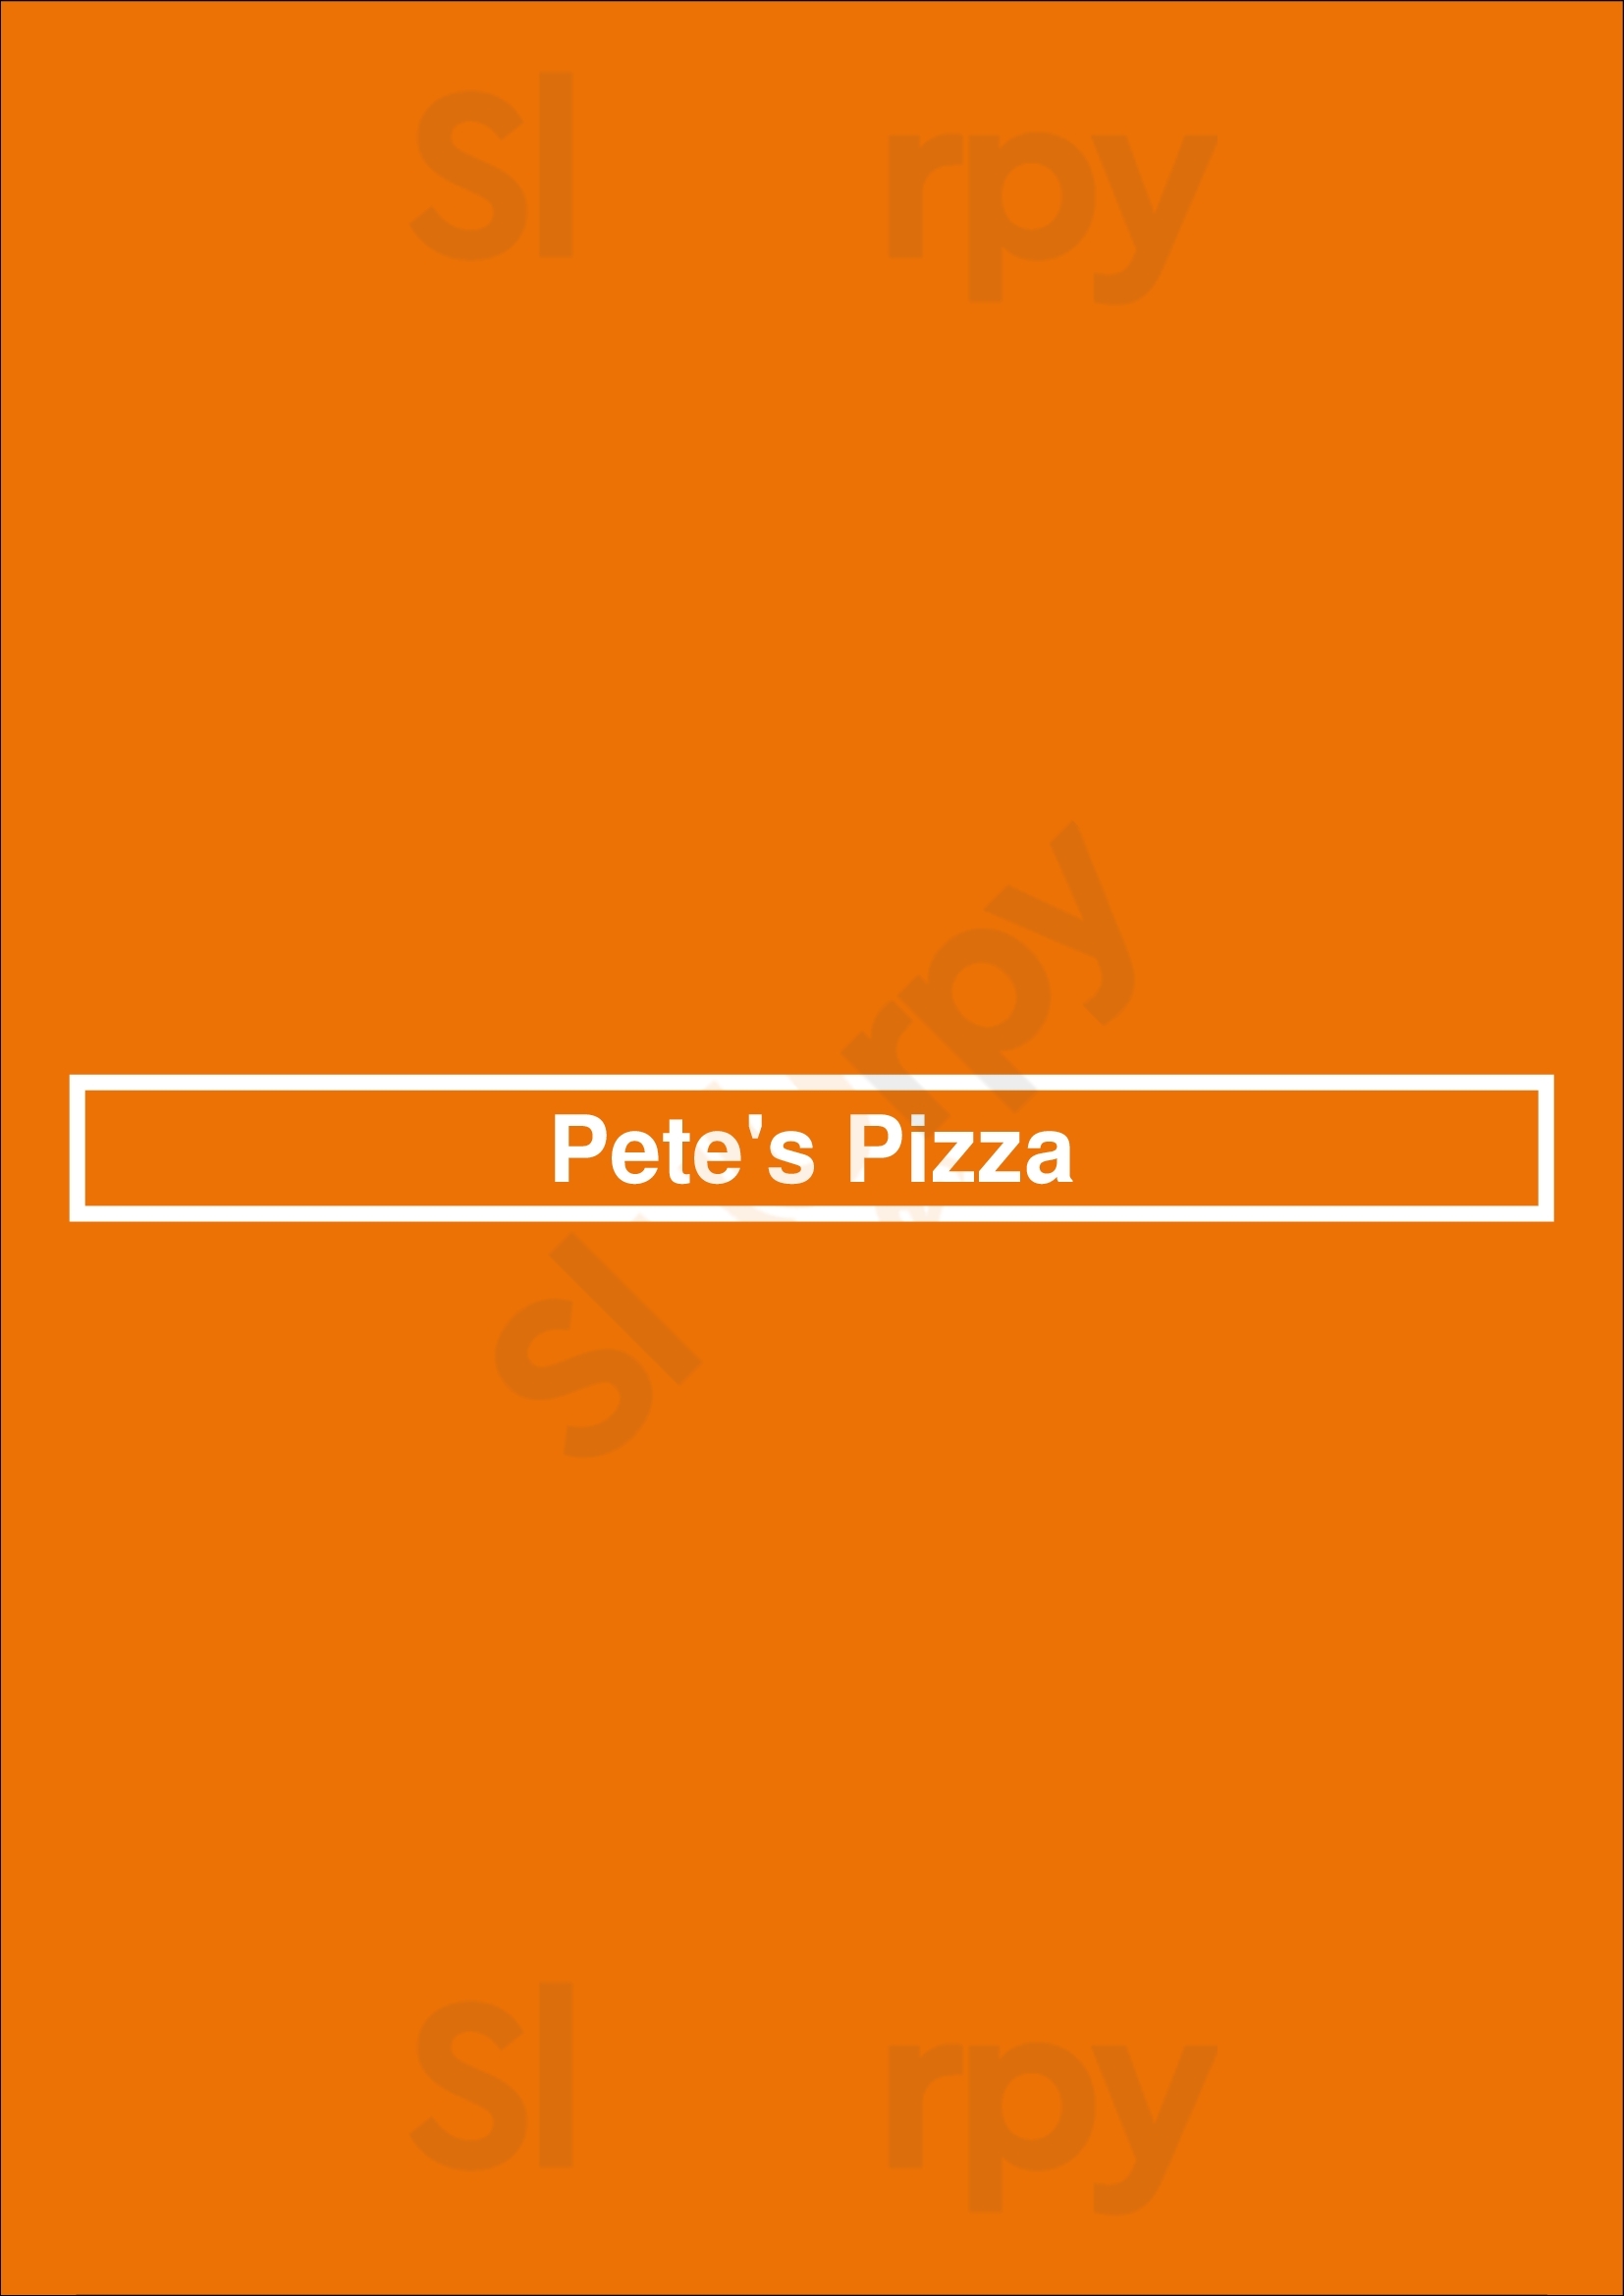 Pete's Pizza Philadelphia Menu - 1